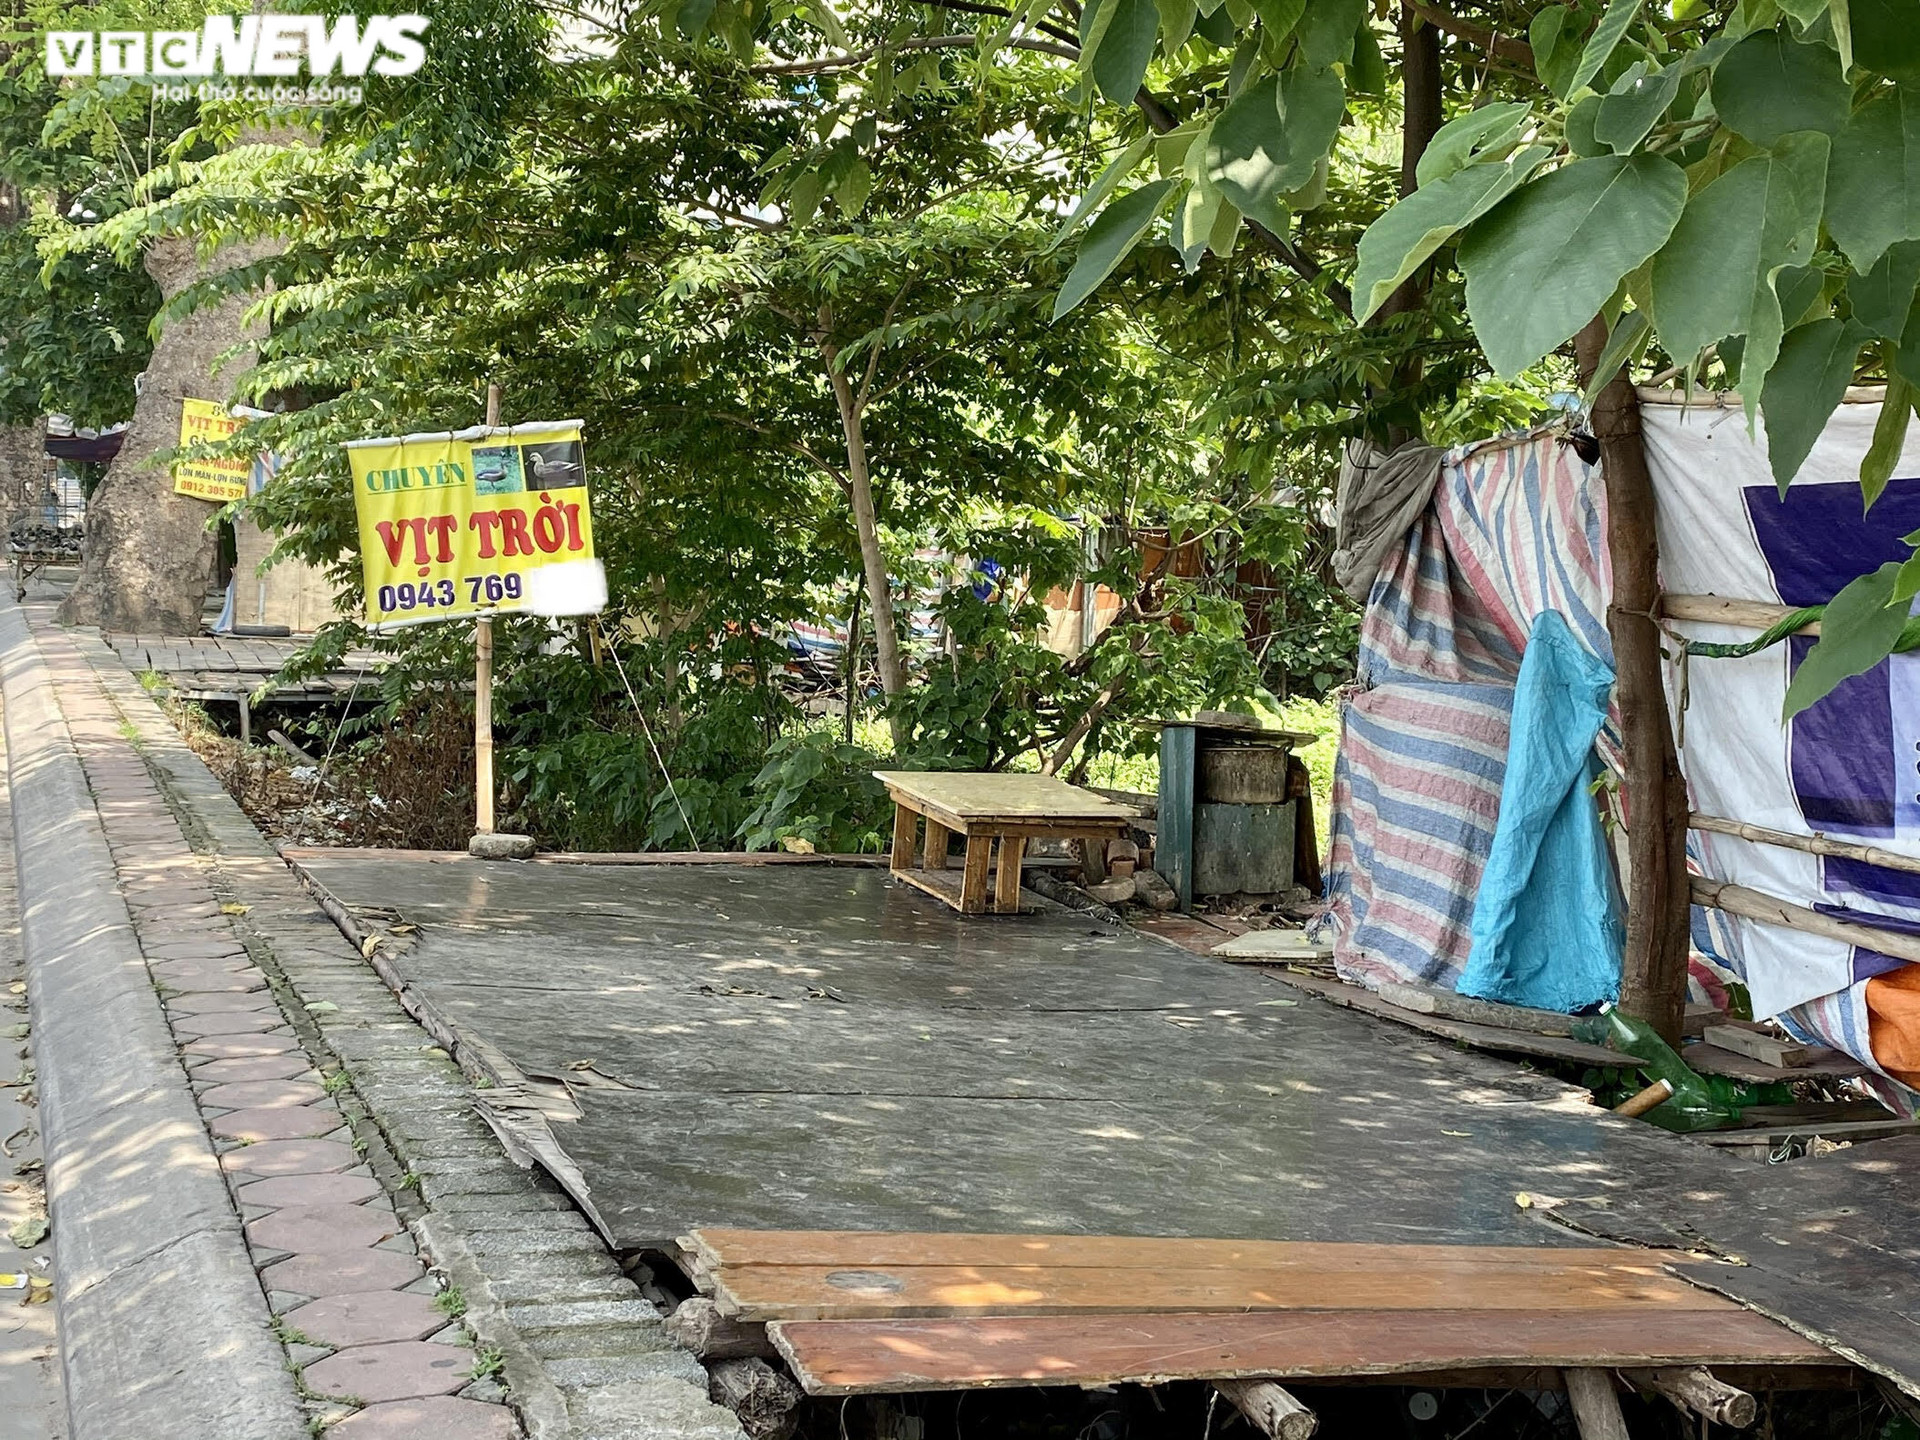 Hà Nội: Nhiều chợ cóc, chợ tạm vẫn hoạt động bất chấp lệnh cấm  - 12